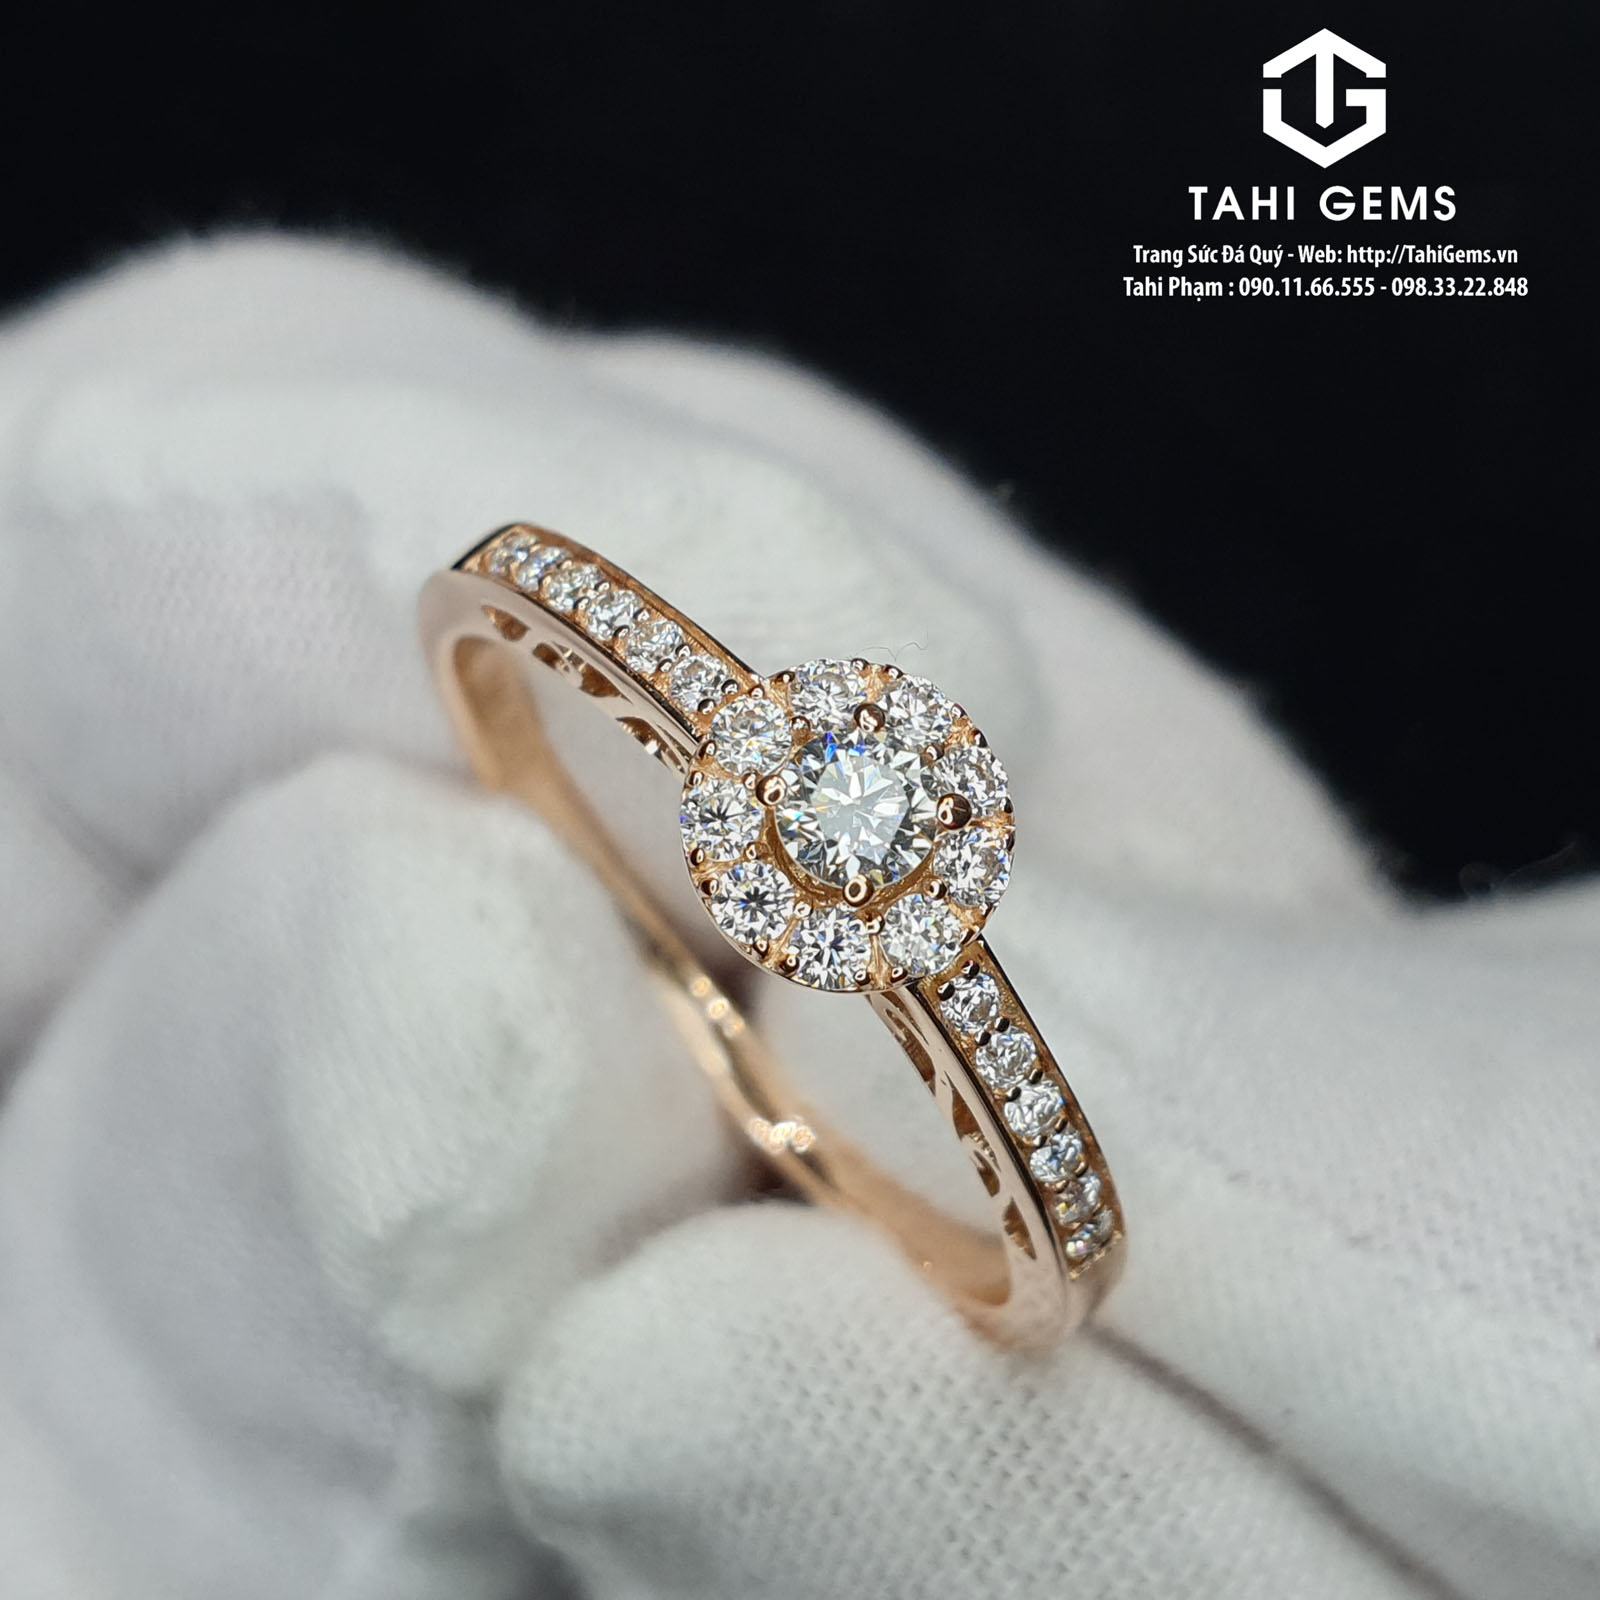 Review một số nhẫn kim cương dưới 10 triệu đẹp tại Tahigems